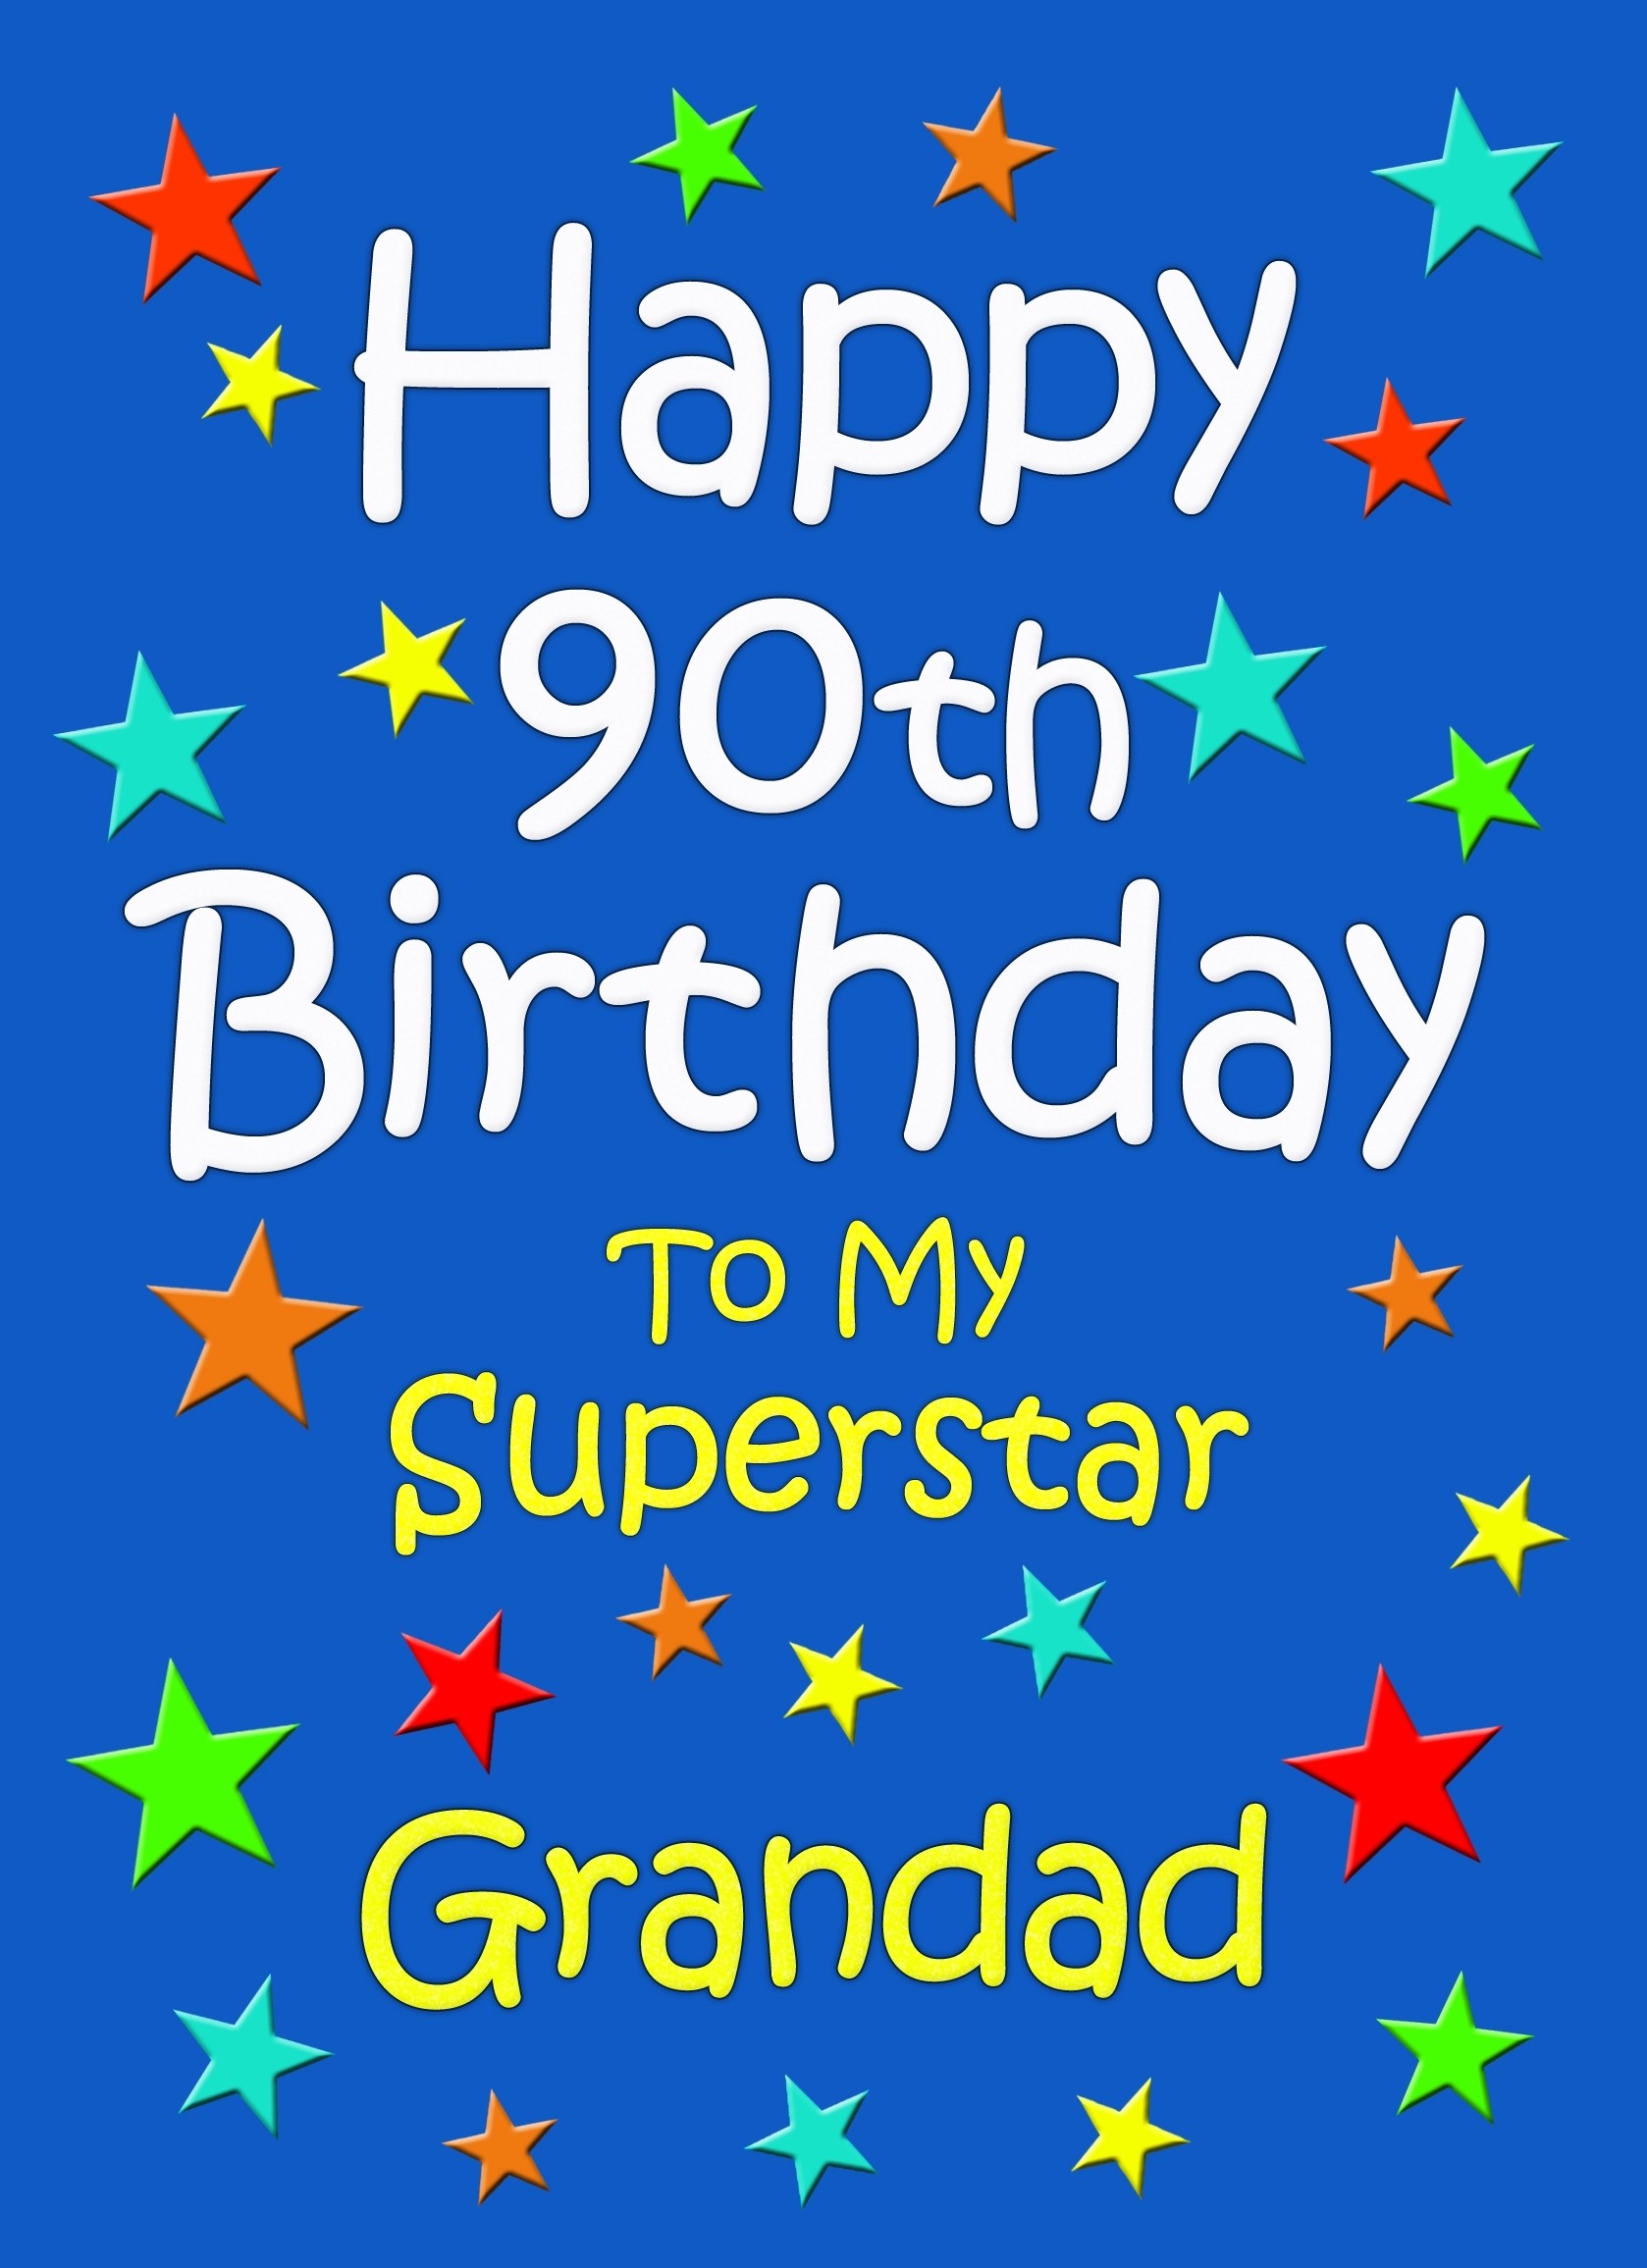 Grandad 90th Birthday Card (Blue)